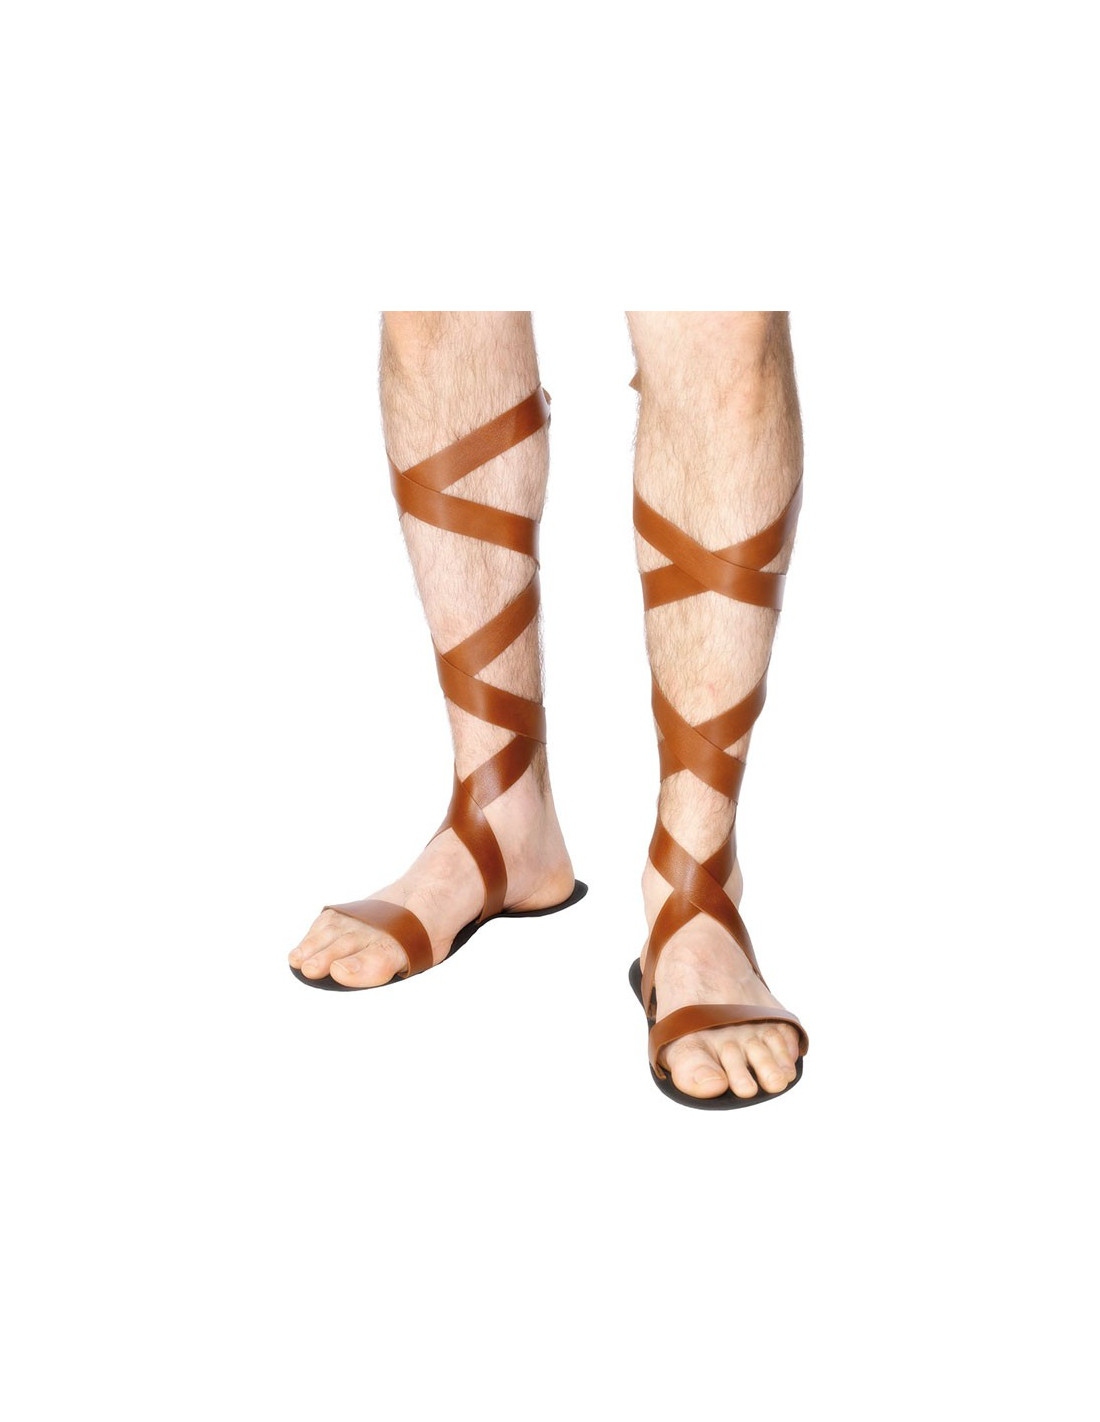 Sandalias romanas para hombre - Comprar en Tienda